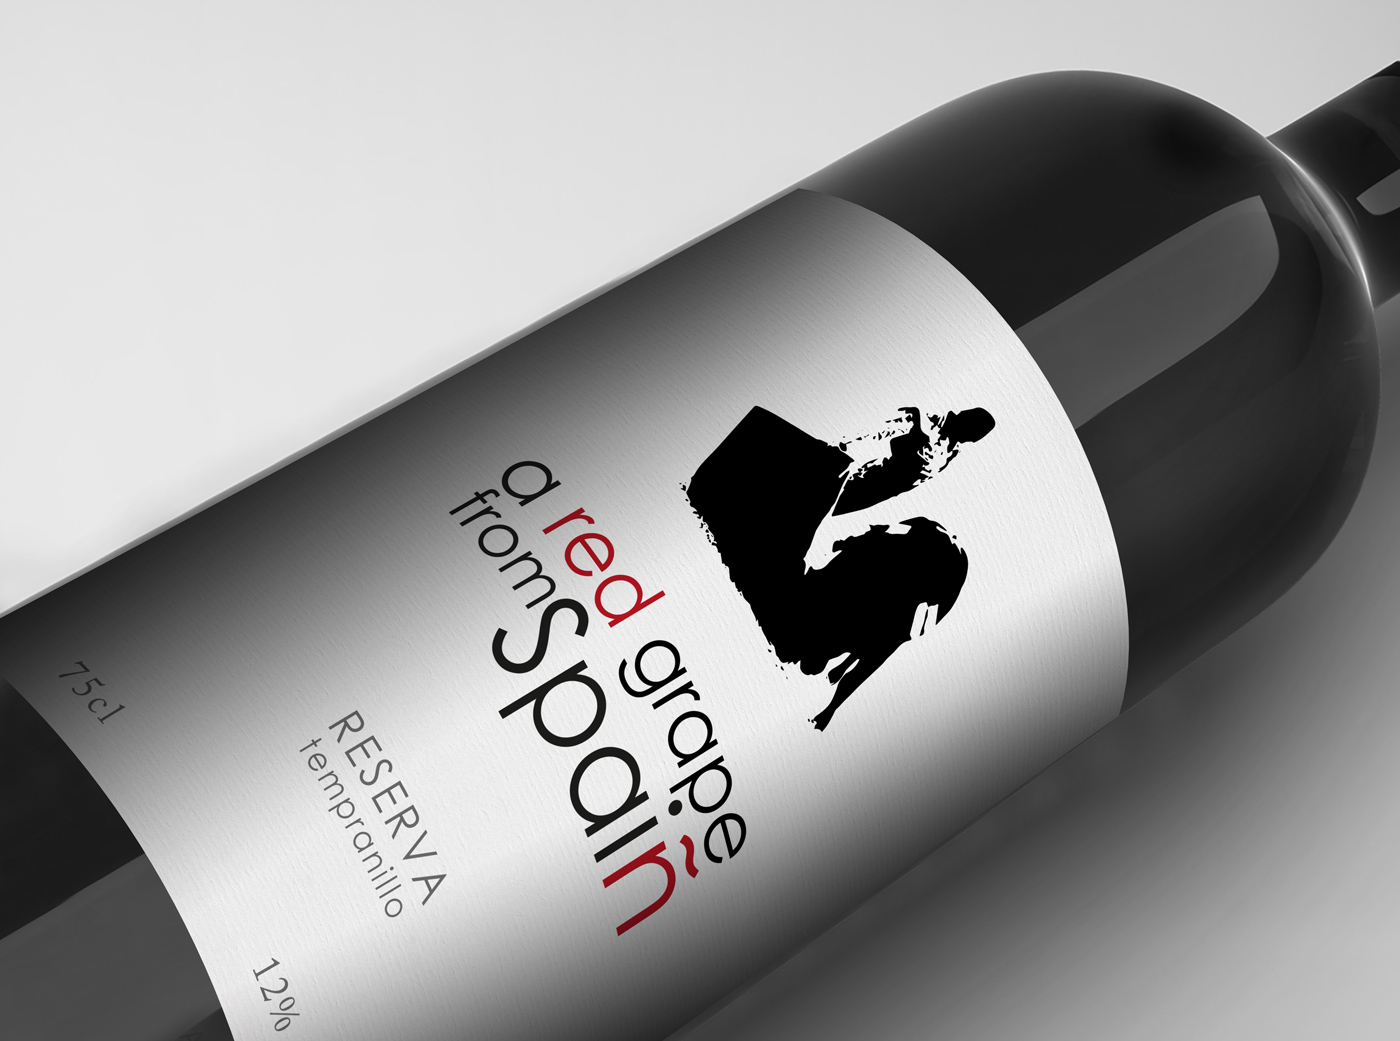 Diseño gráfico y creativo de etiquetas y packaging de vino para A RED GRAPE FROM SPAIN